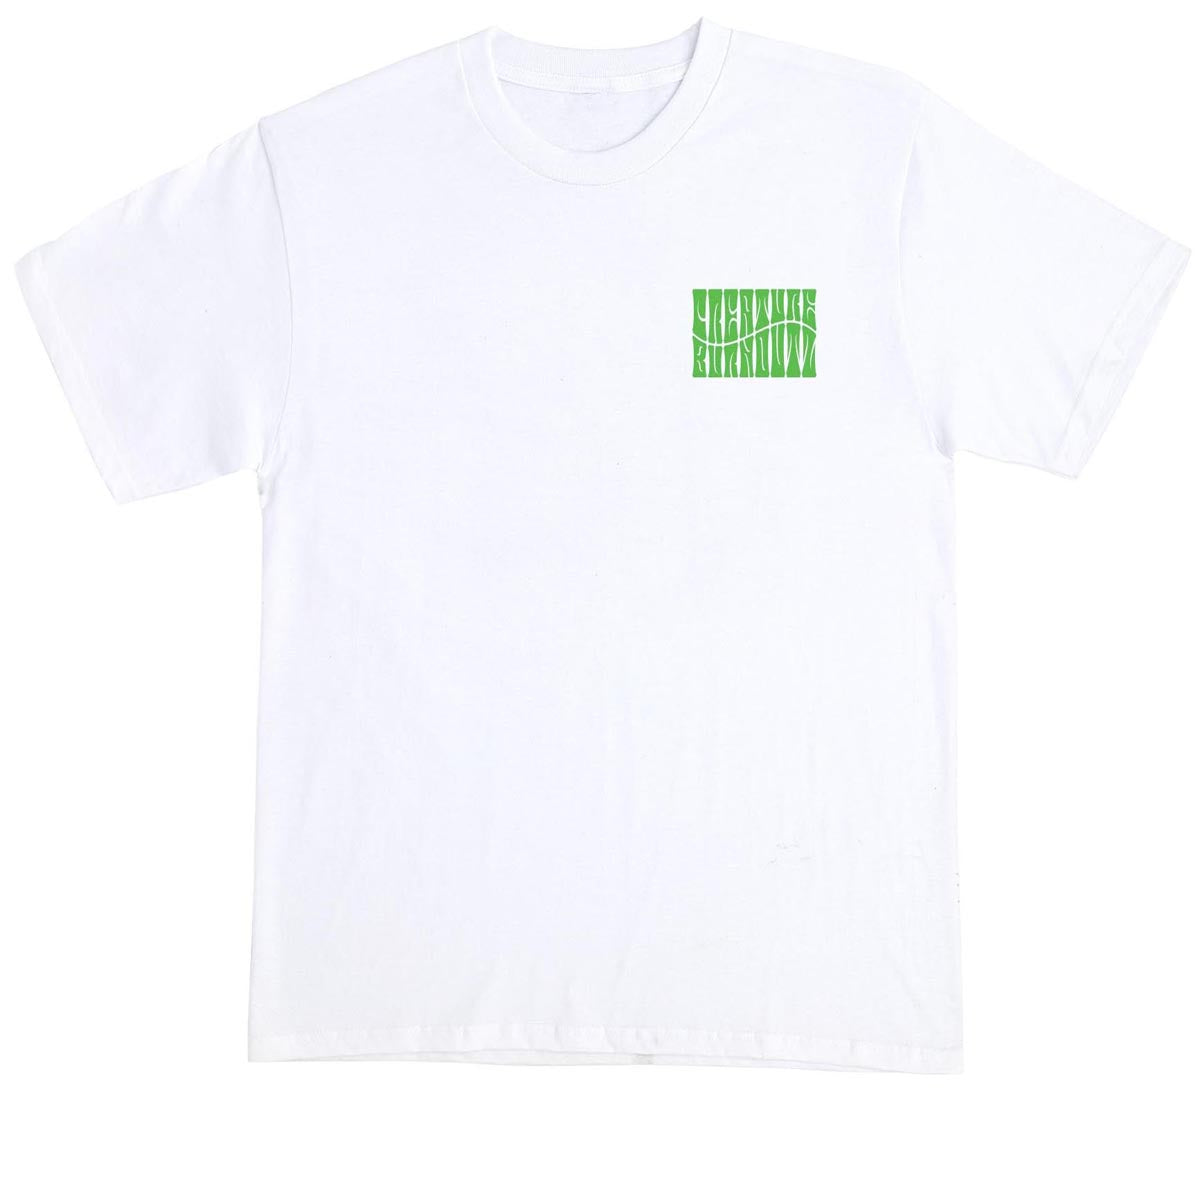 Creature Burnoutz VC T-Shirt - White image 2